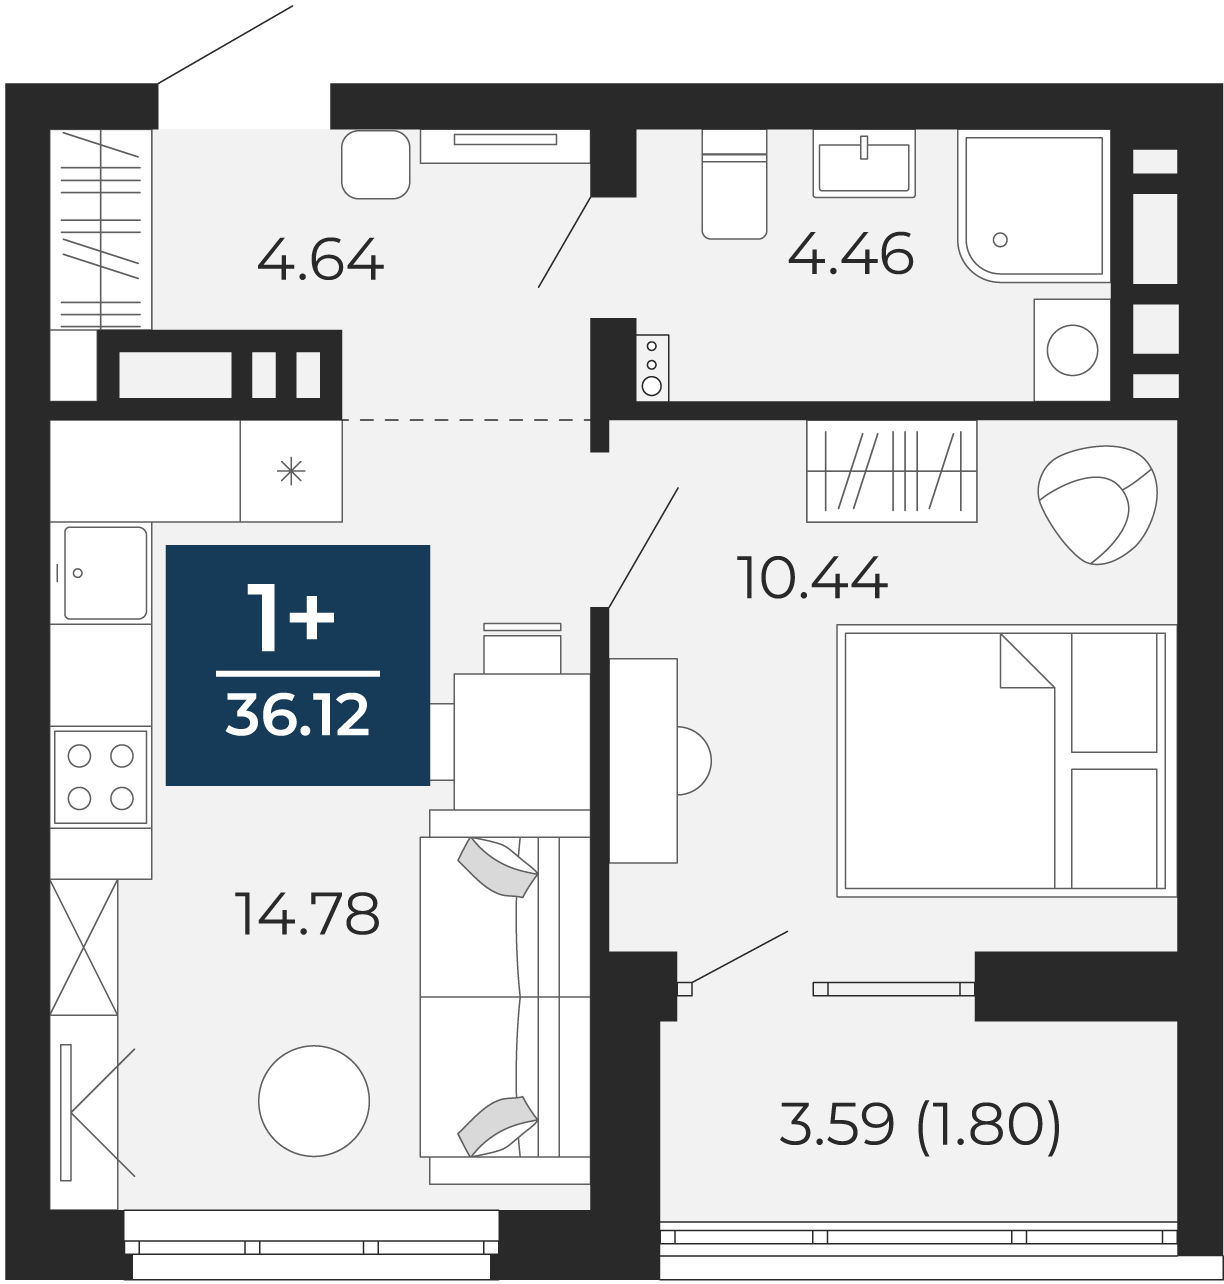 Квартира № 234, 1-комнатная, 36.12 кв. м, 11 этаж